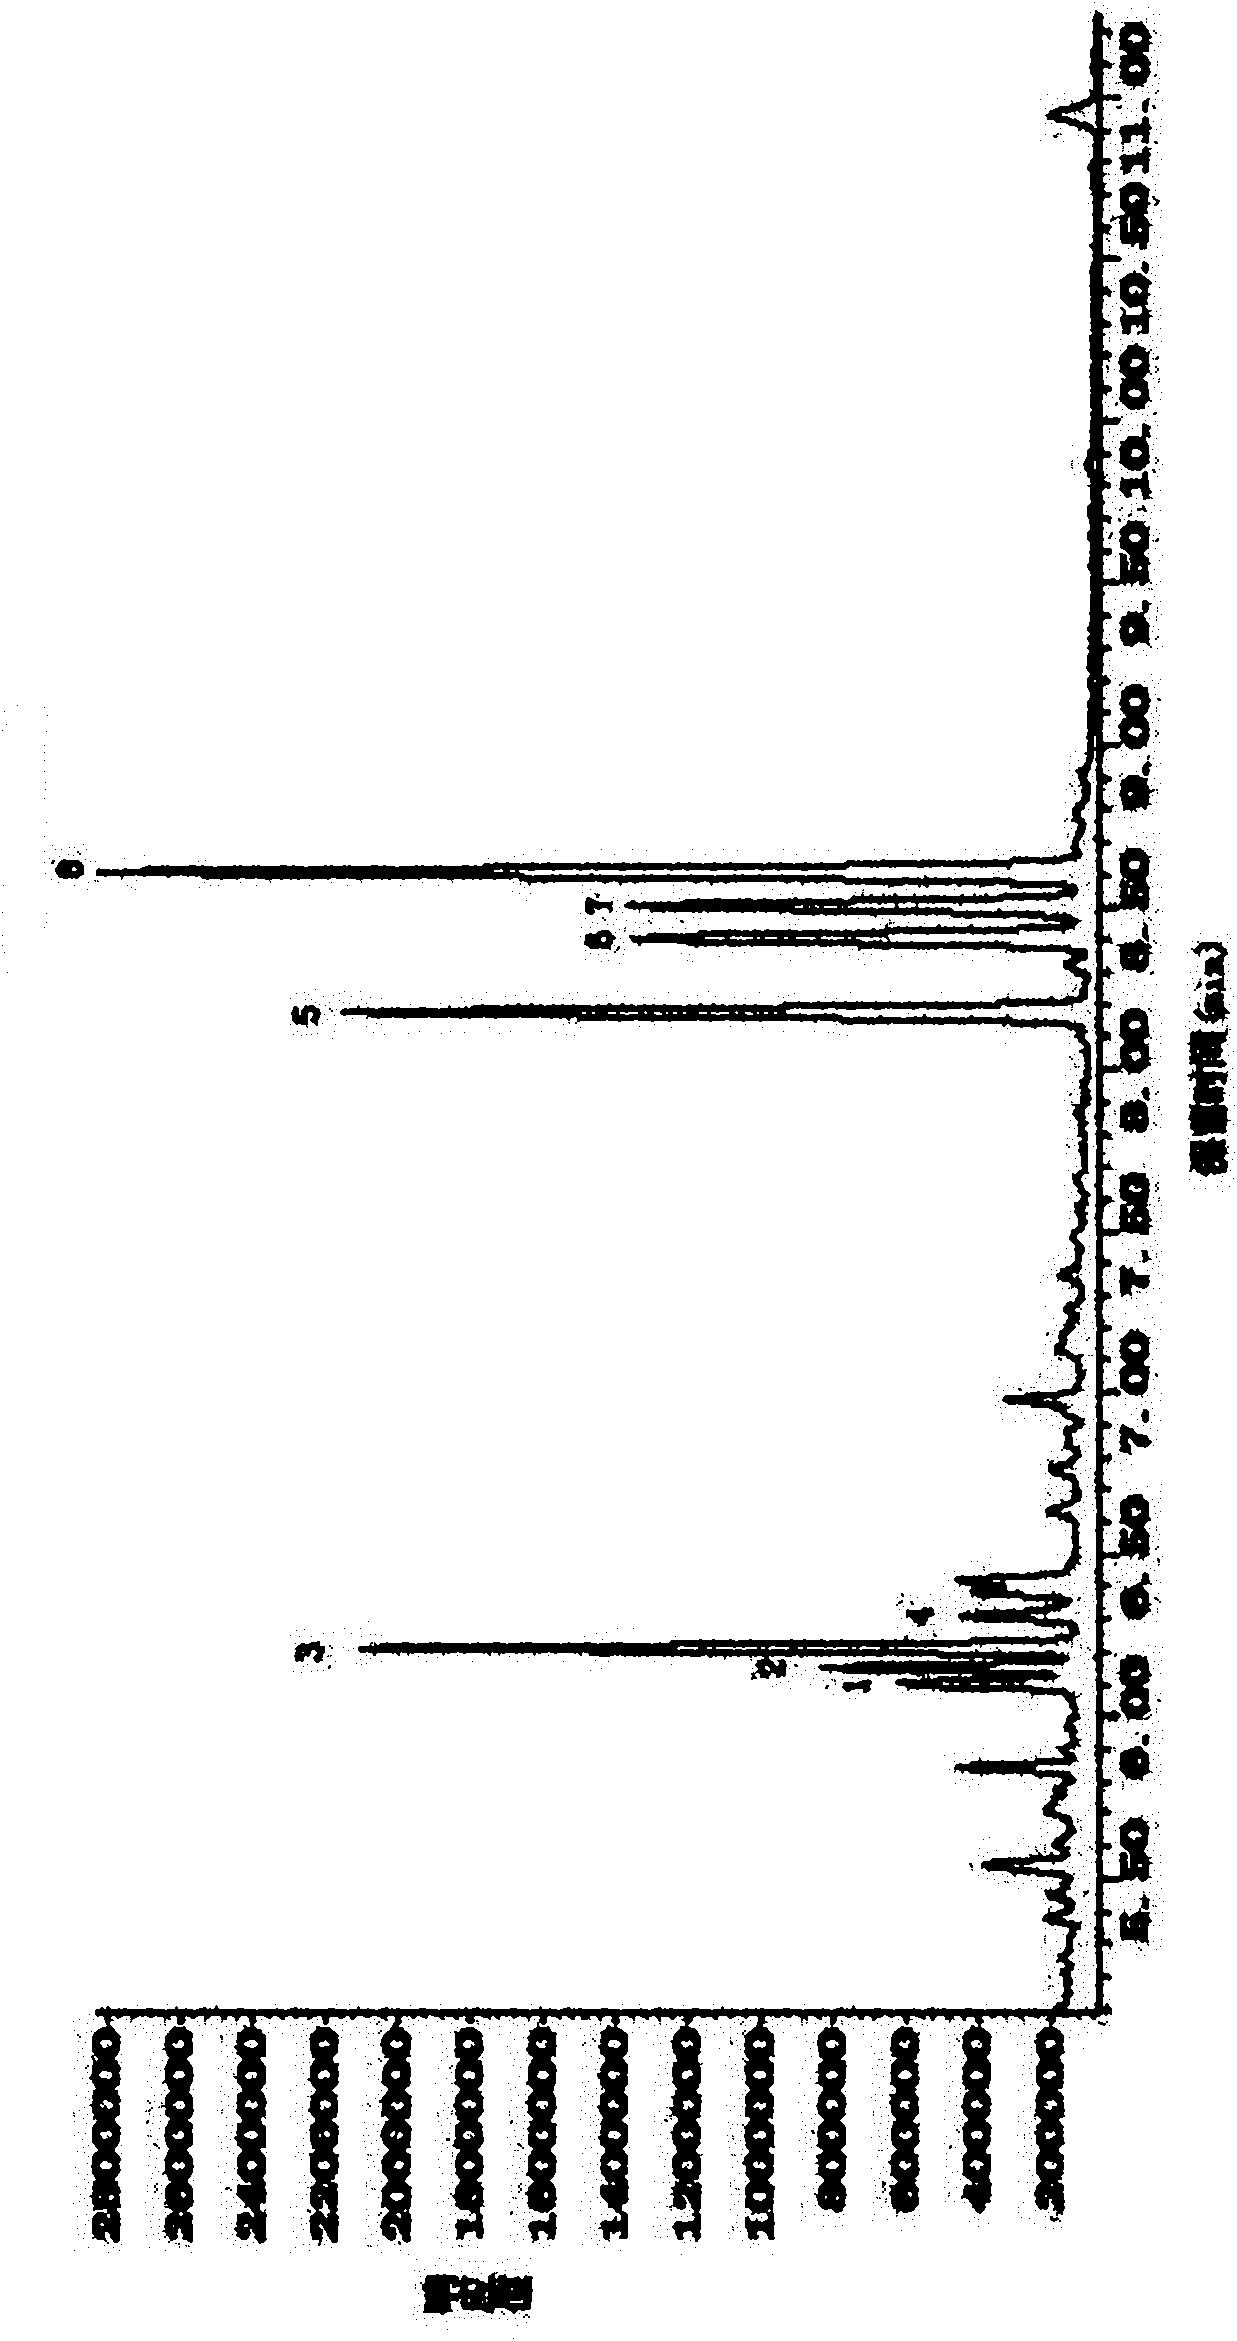 Preparation method of polysaccharide in pine cone from Pinus koraiensis